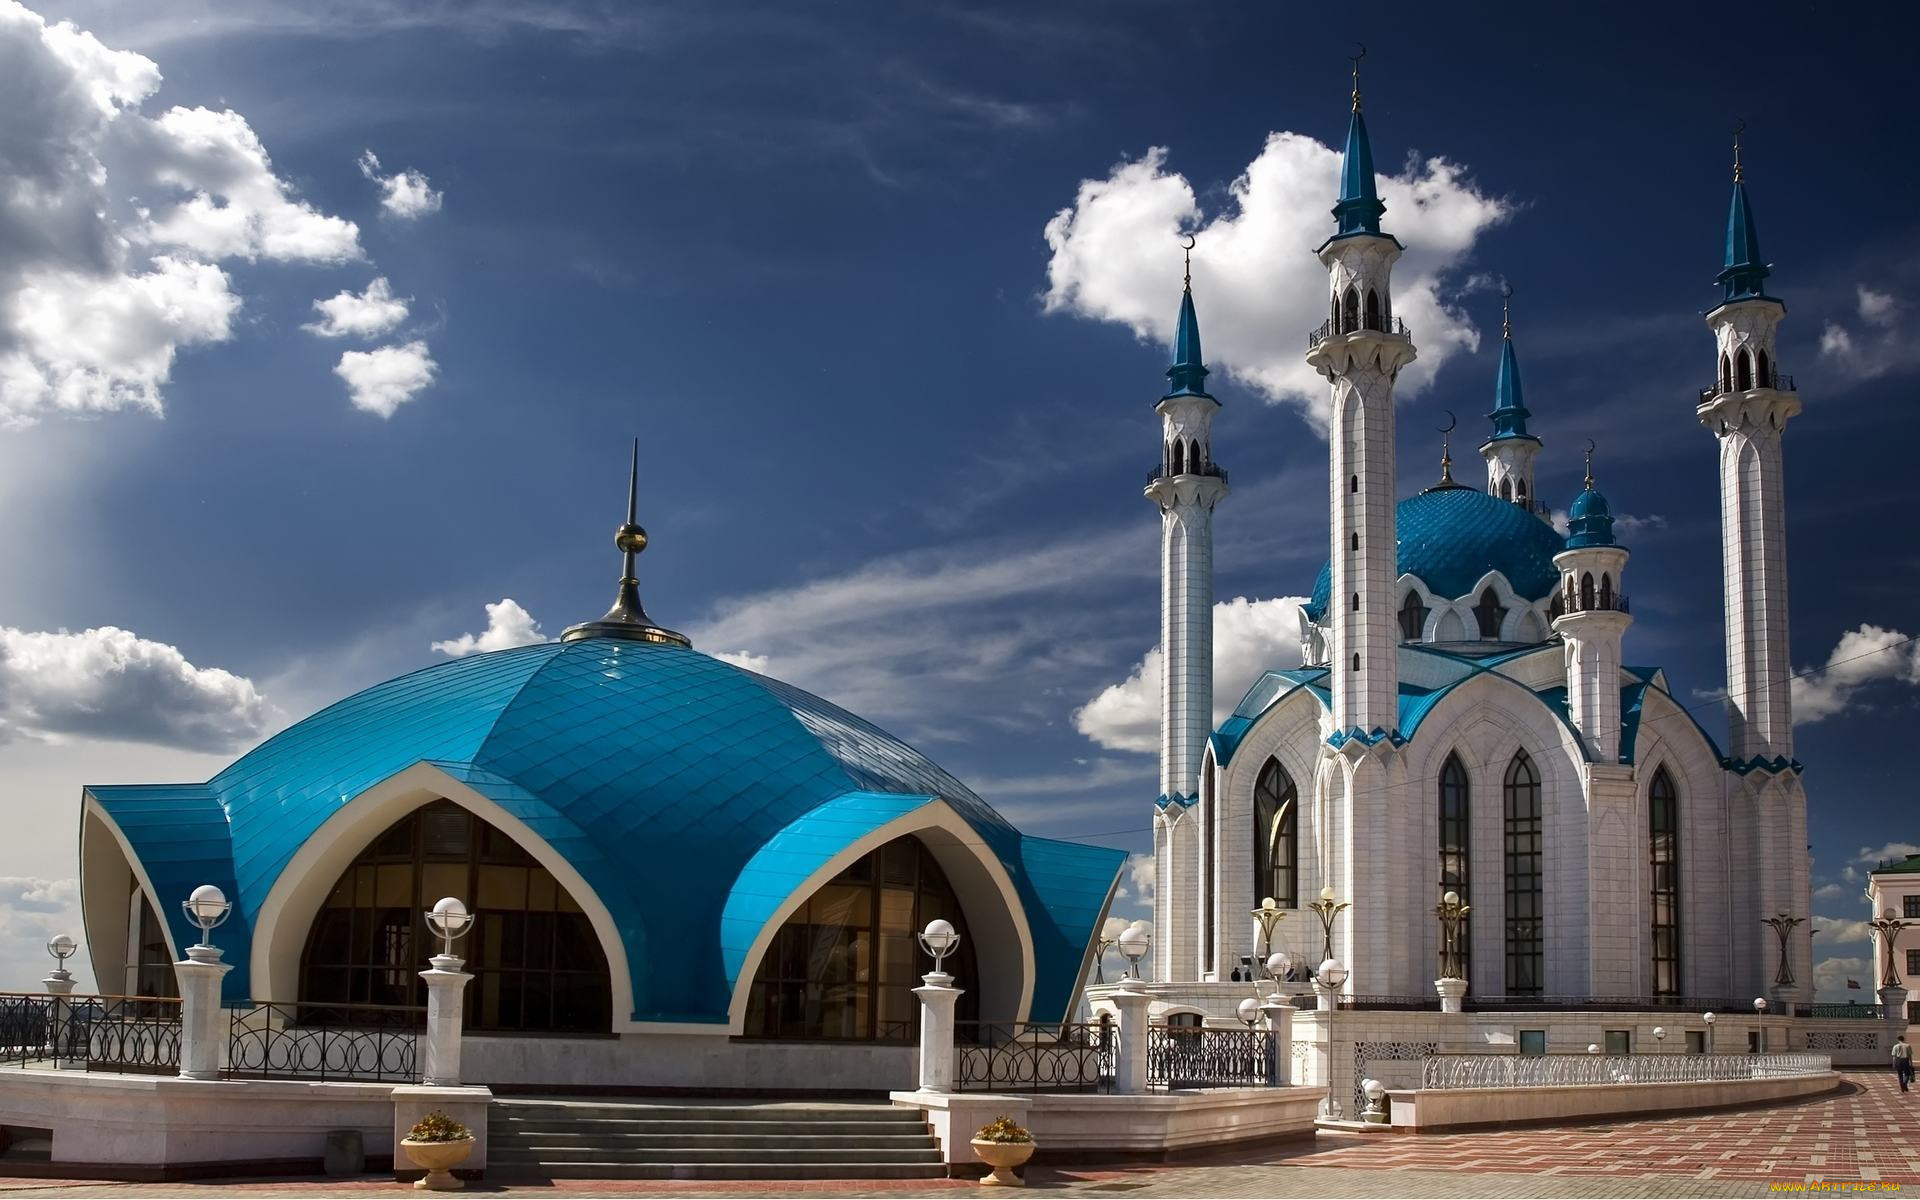 Мечеть фото в хорошем качестве